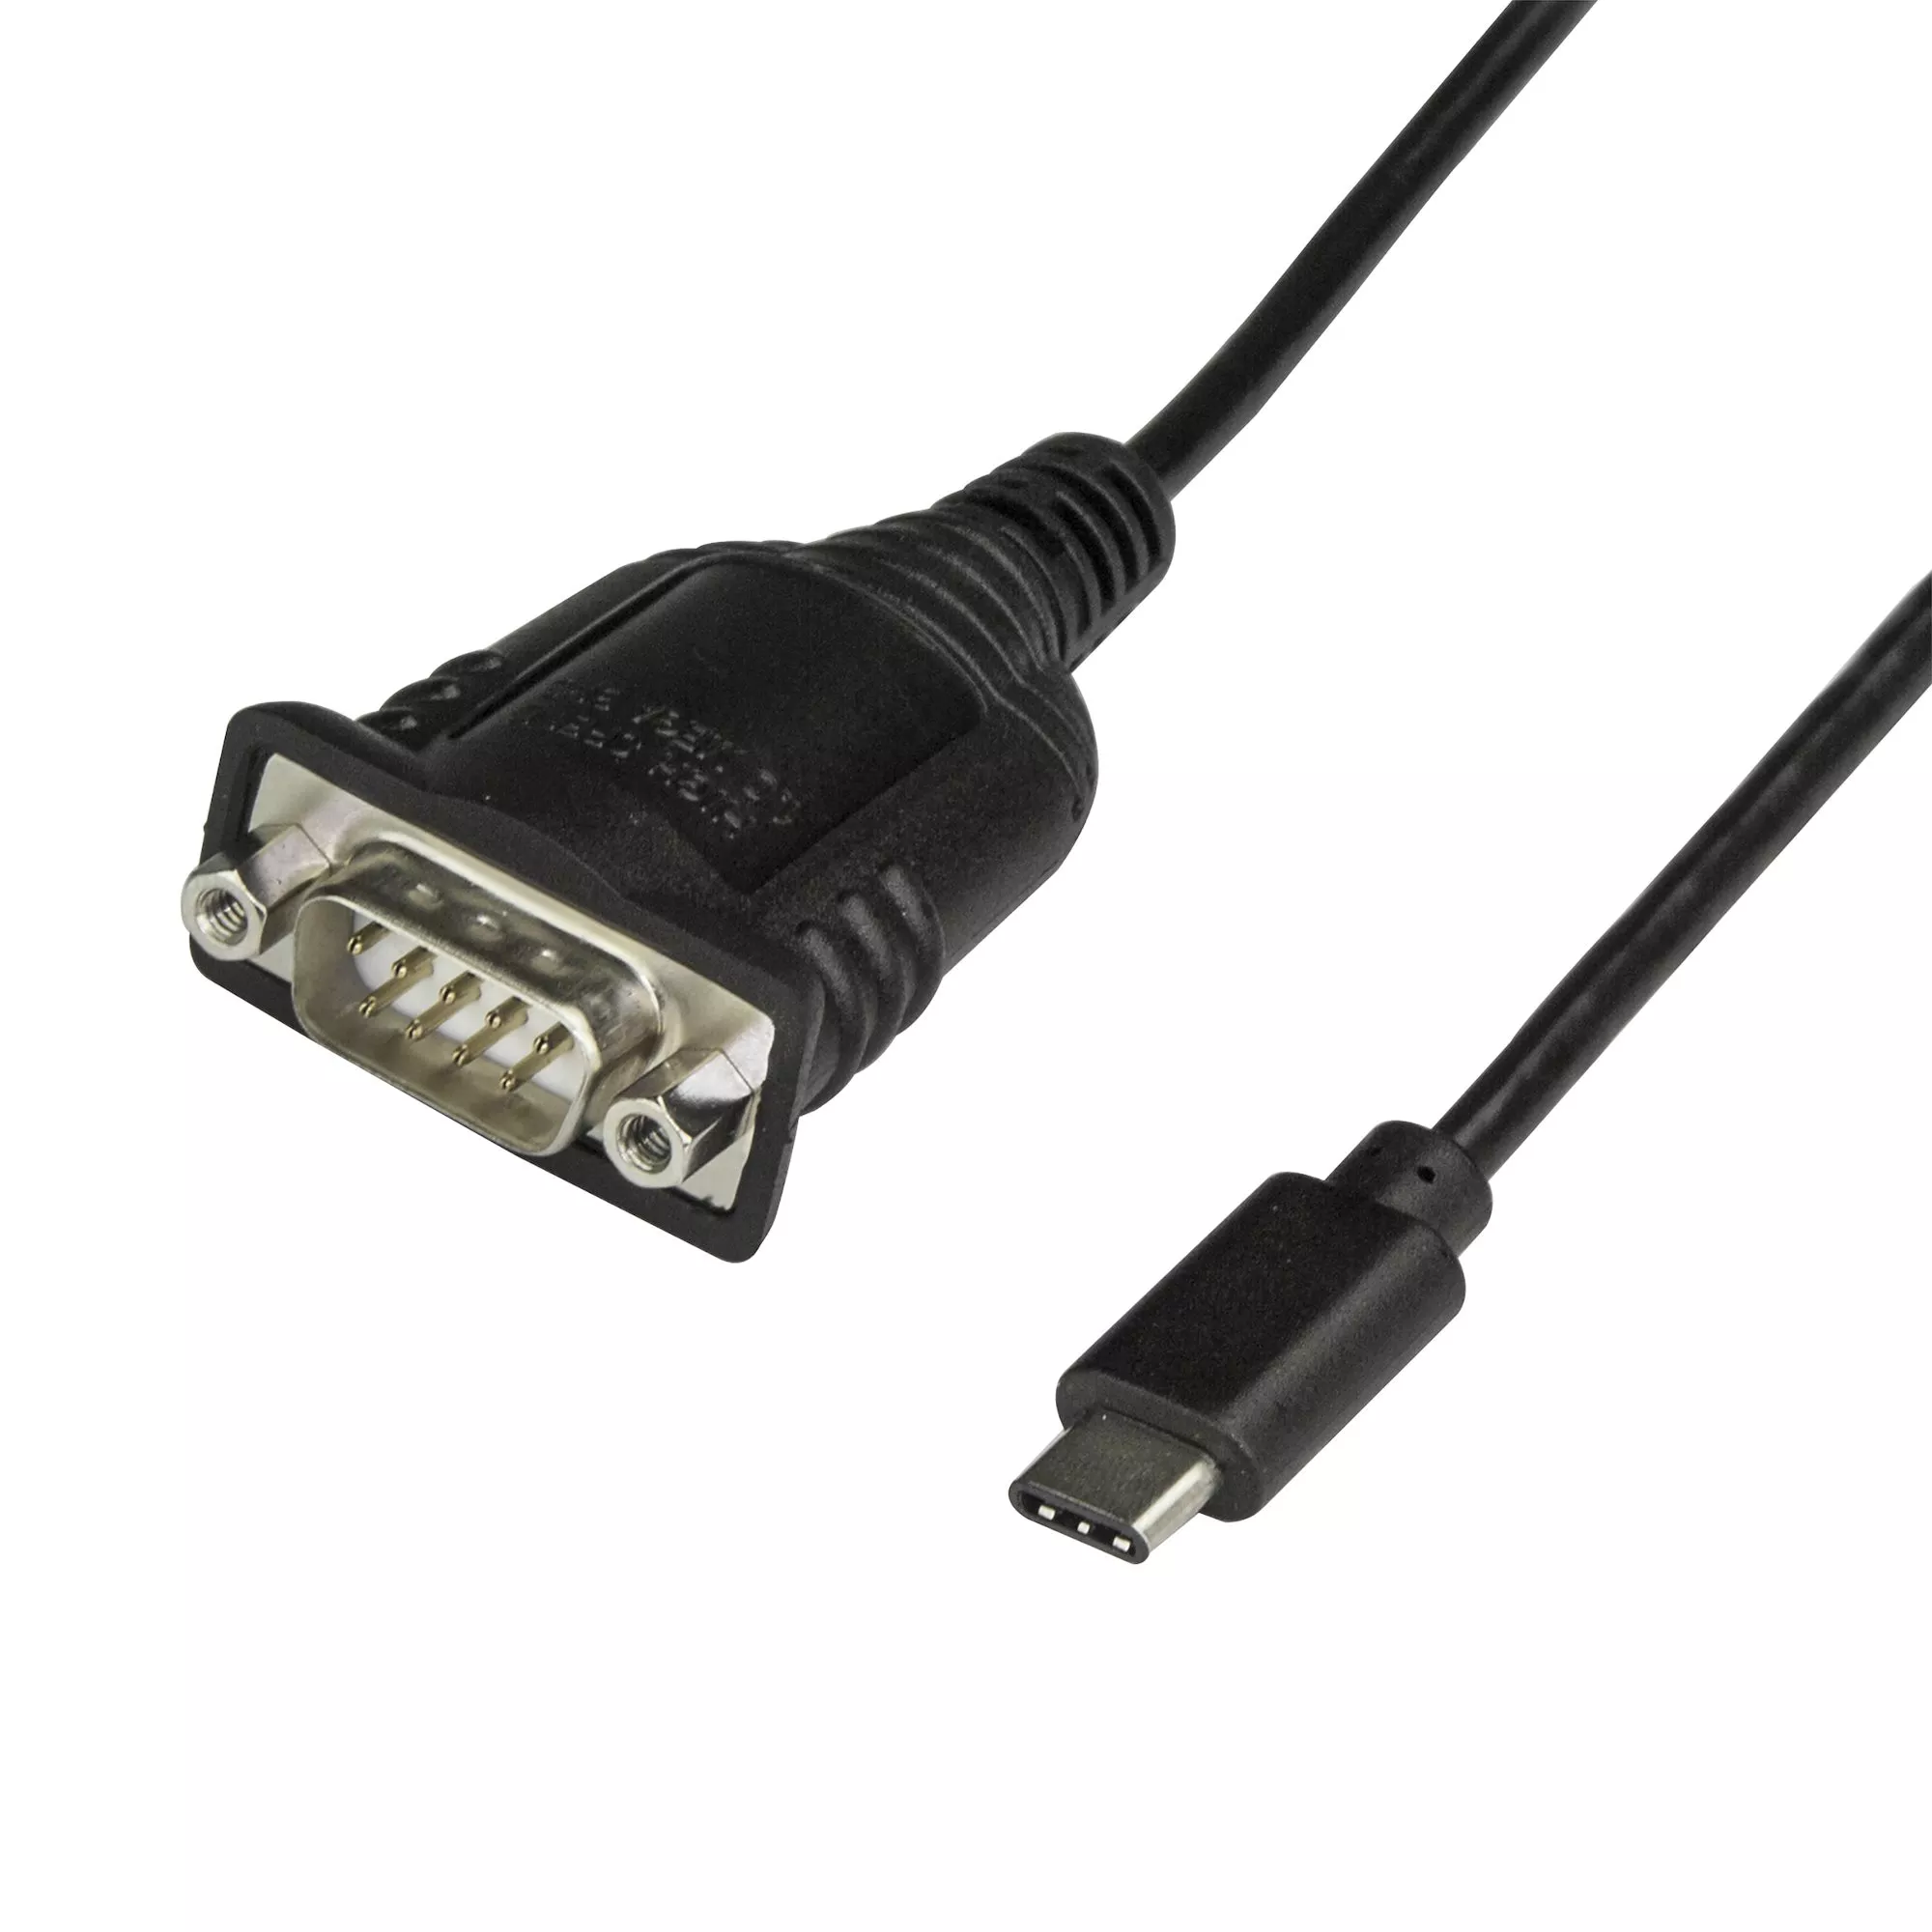 Revendeur officiel Câble USB StarTech.com Câble Adaptateur USB-C vers Série de 40 cm